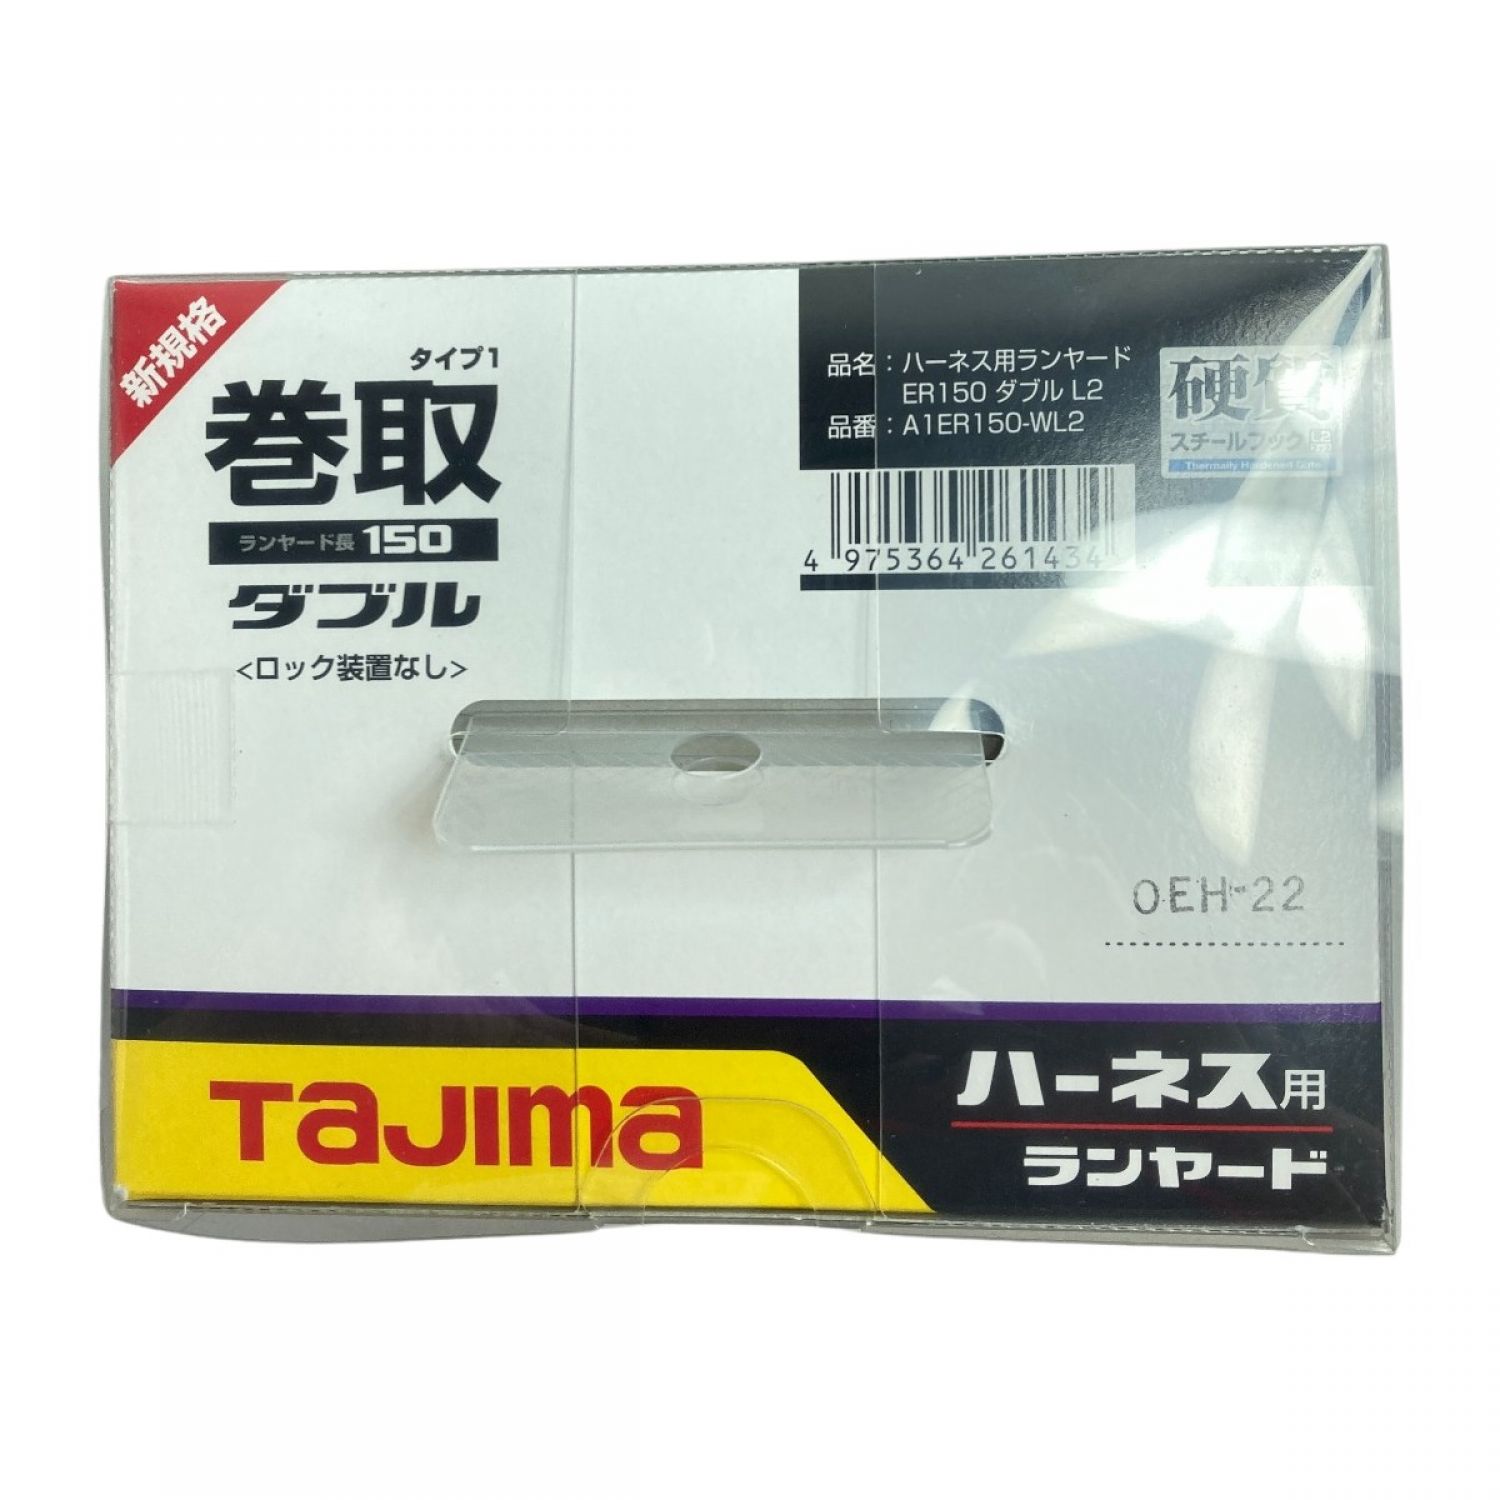 タジマ(Tajima) 安全帯 ハーネス用ランヤードER150 ダブル L2 A1ER150-WL2 - 2